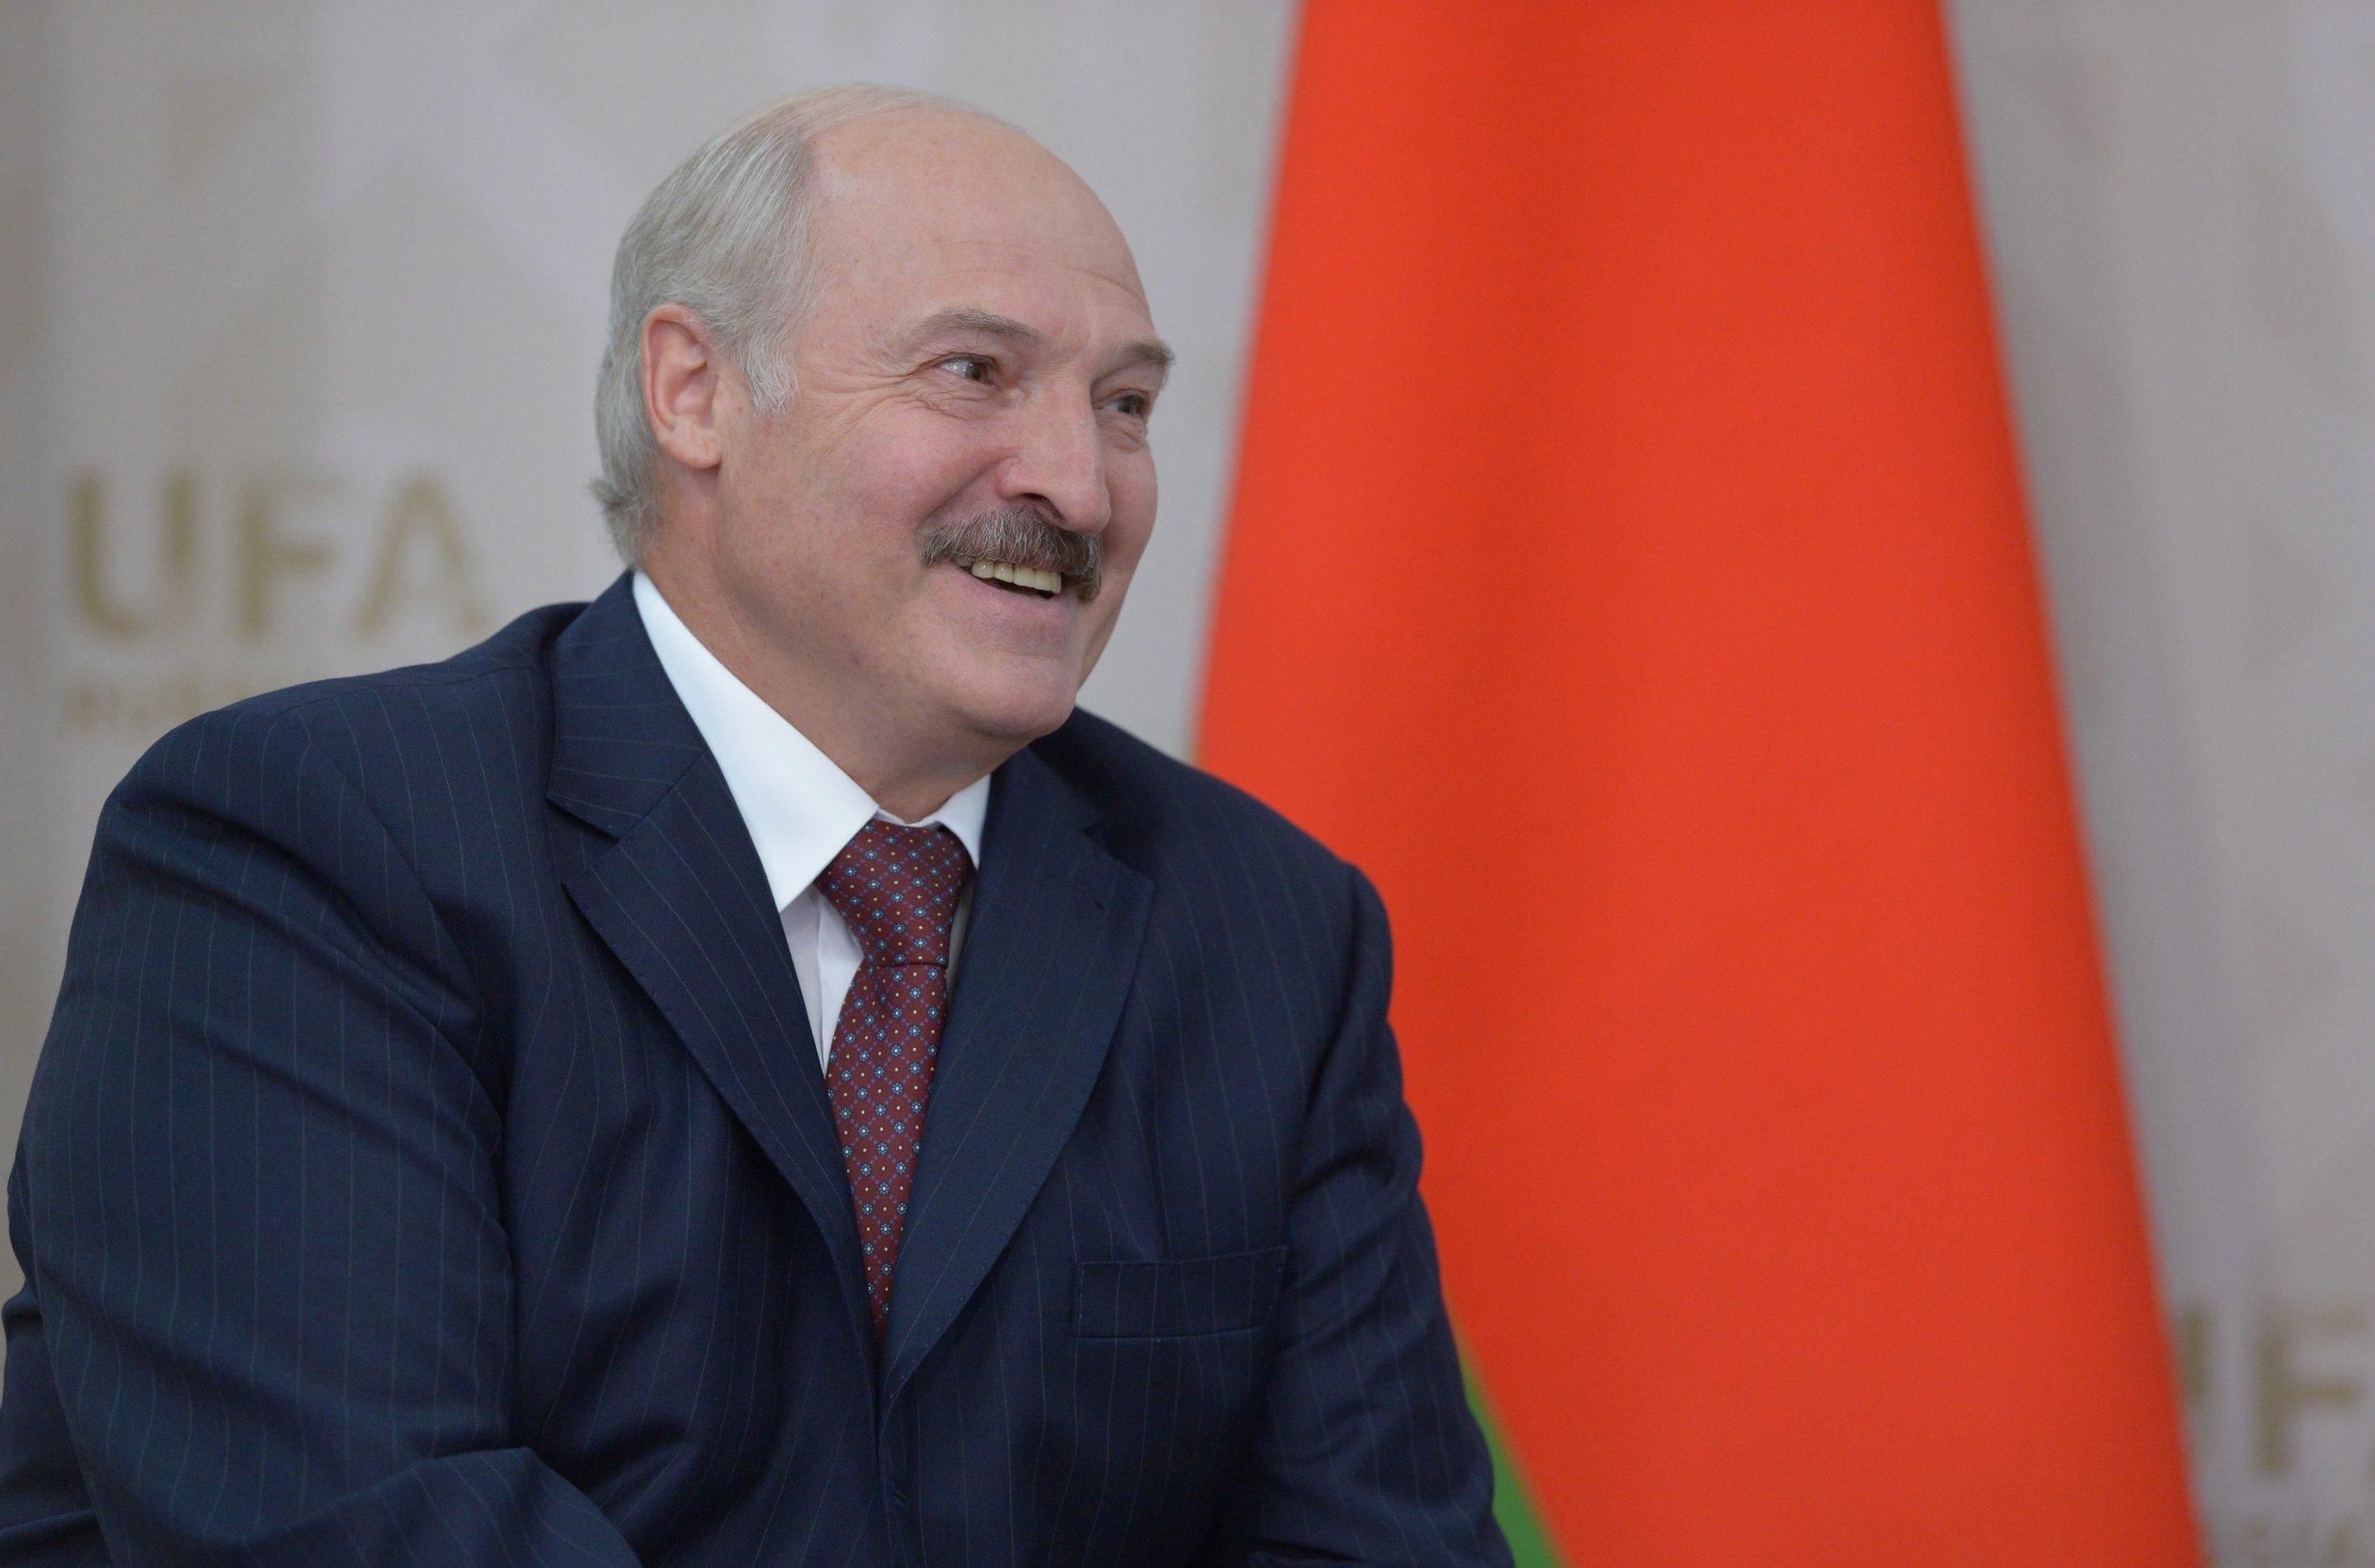 Отдельный дом в союзном строительстве: как Лукашенко видит объединение с РФ